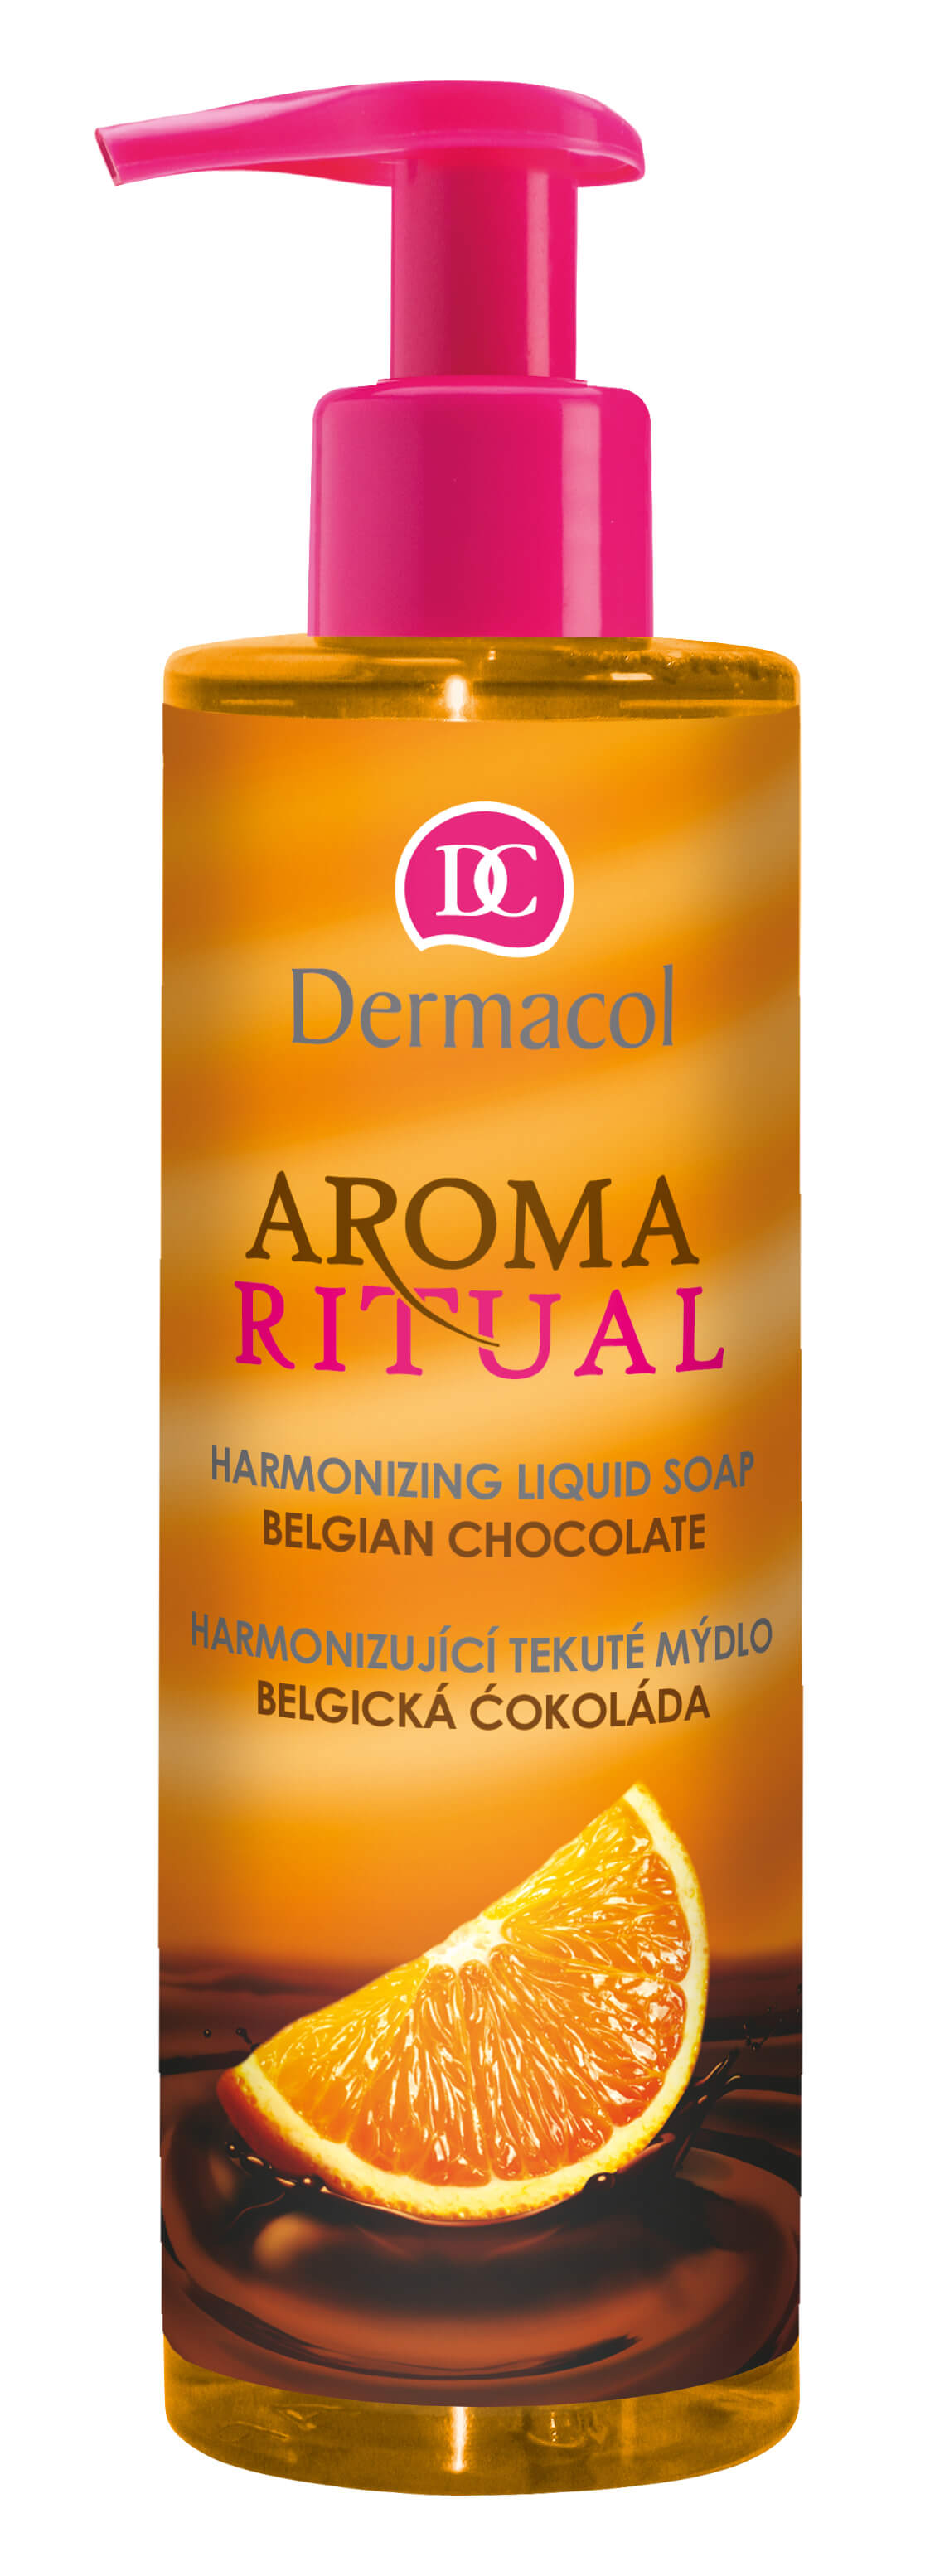 Dermacol Harmonizující tekuté mýdlo Belgická Čokoláda s Pomerančem Aroma Ritual (Harmonizing Liquid Soap) 250 ml